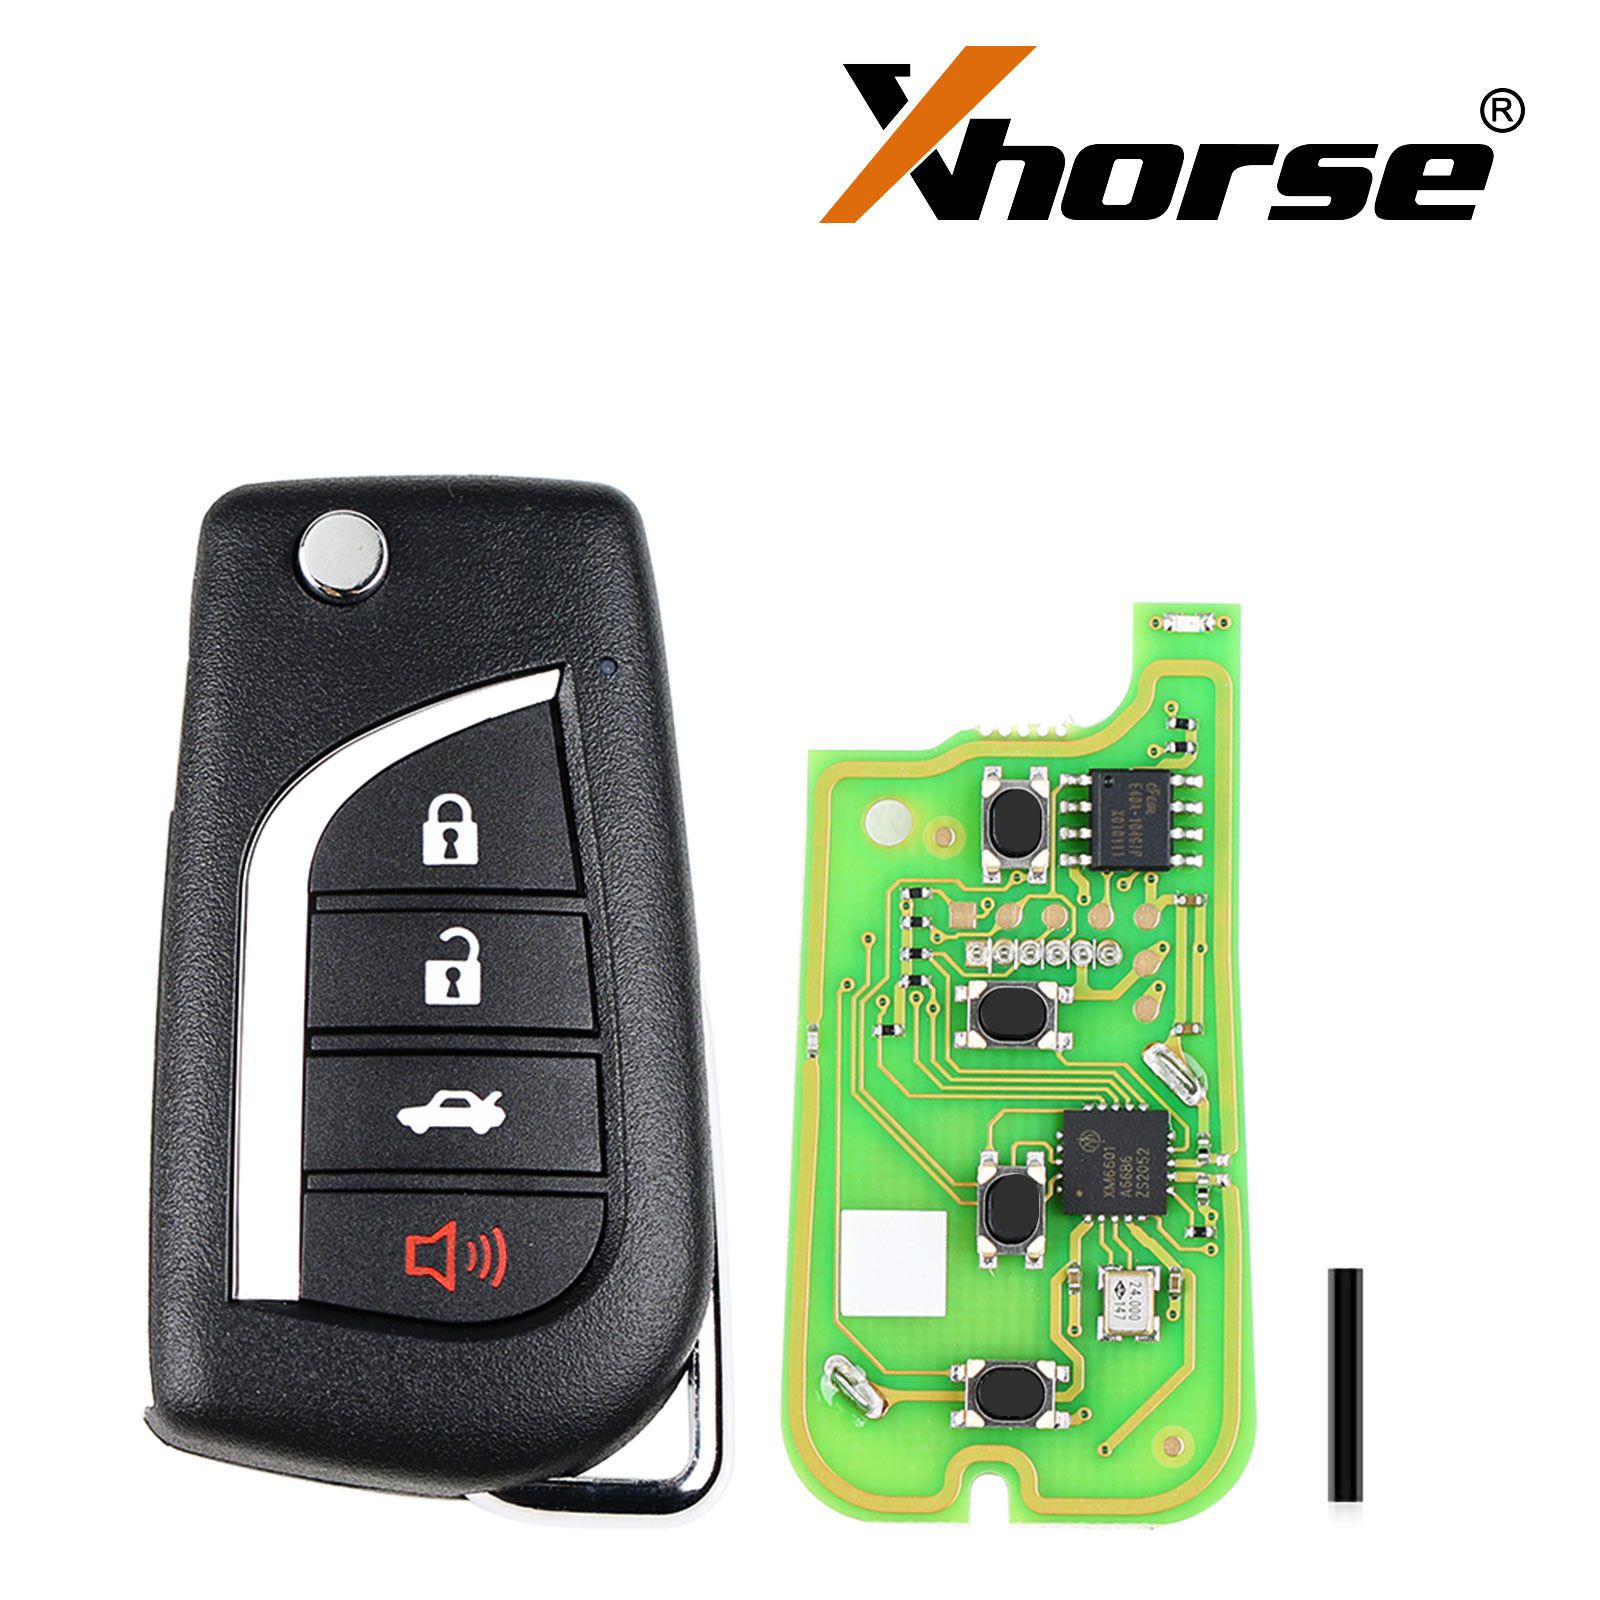 Xhorse xkto10en llave de control remoto por cable Toyota Fly 4 botones versión en inglés 5 piezas / lote